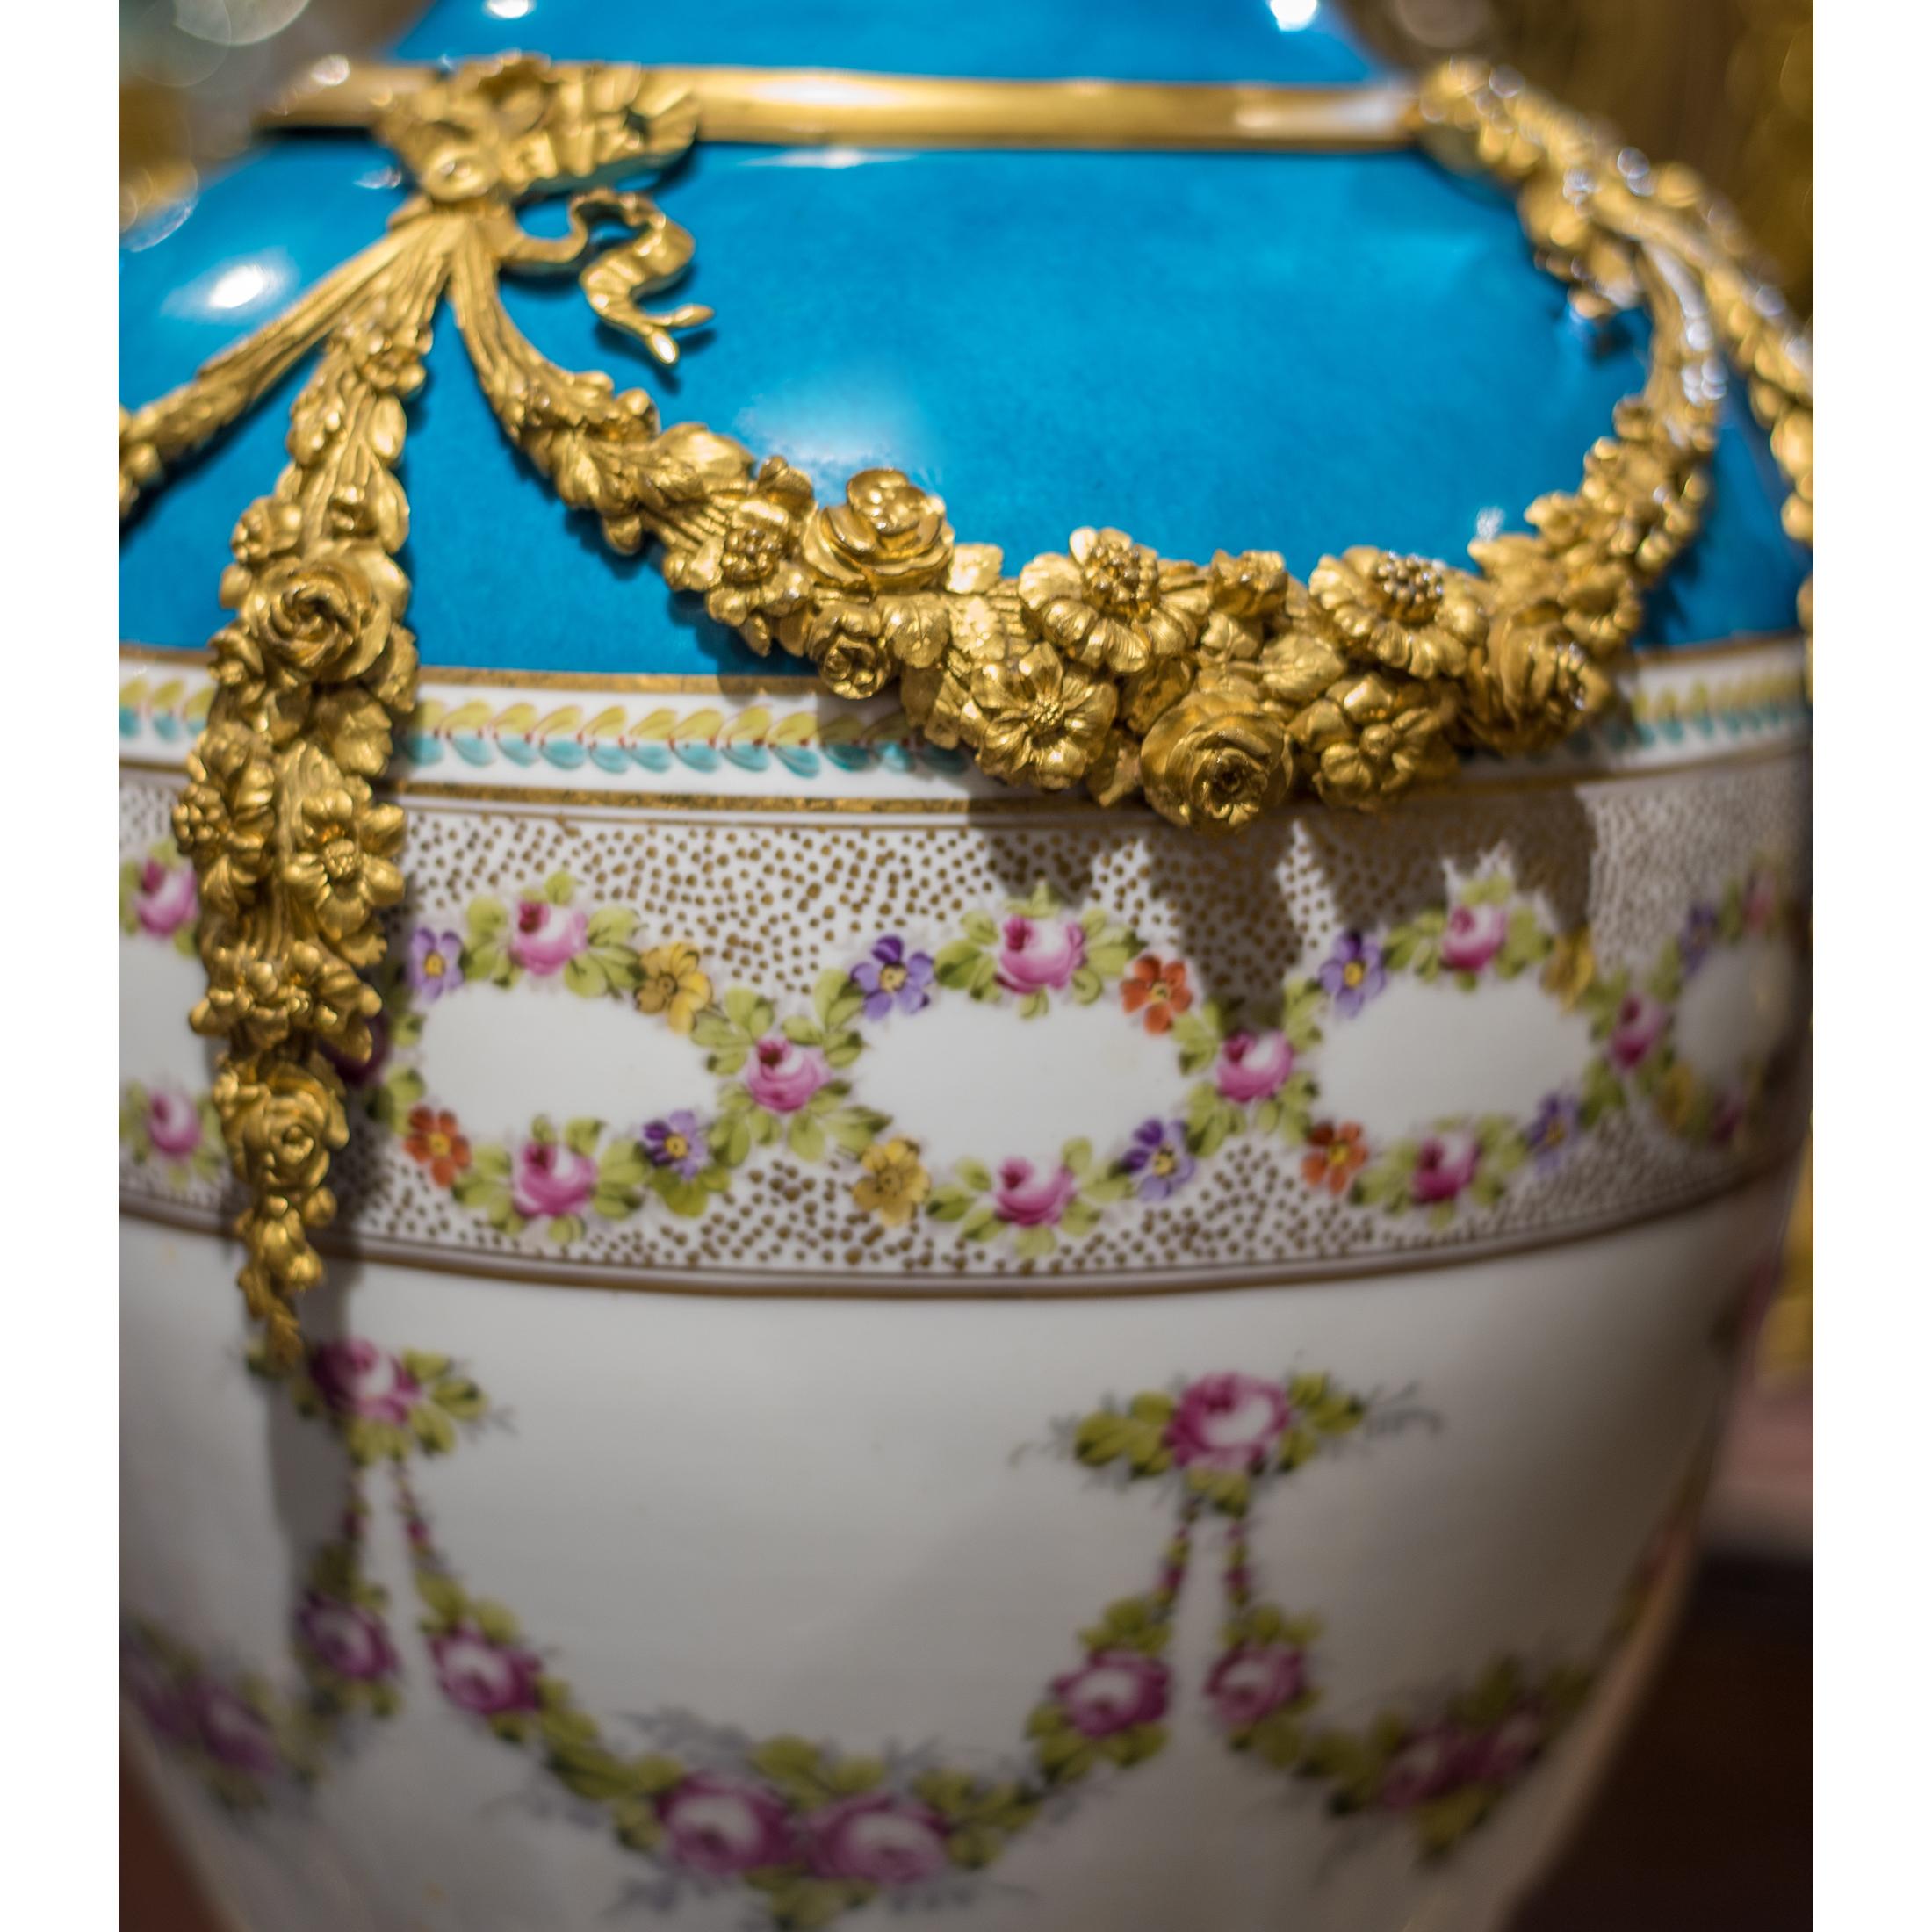 Hochwertige Porzellanvase im Sèvres-Stil mit Ormolu-Montierung. Die eiförmige Vase wird von Ormolu-Girlanden flankiert, die mit einem fein gemalten Blumendekor versehen sind.

Datum: Ende 19. Jahrhundert
Herkunft: Französisch
Abmessungen: 28 1/2